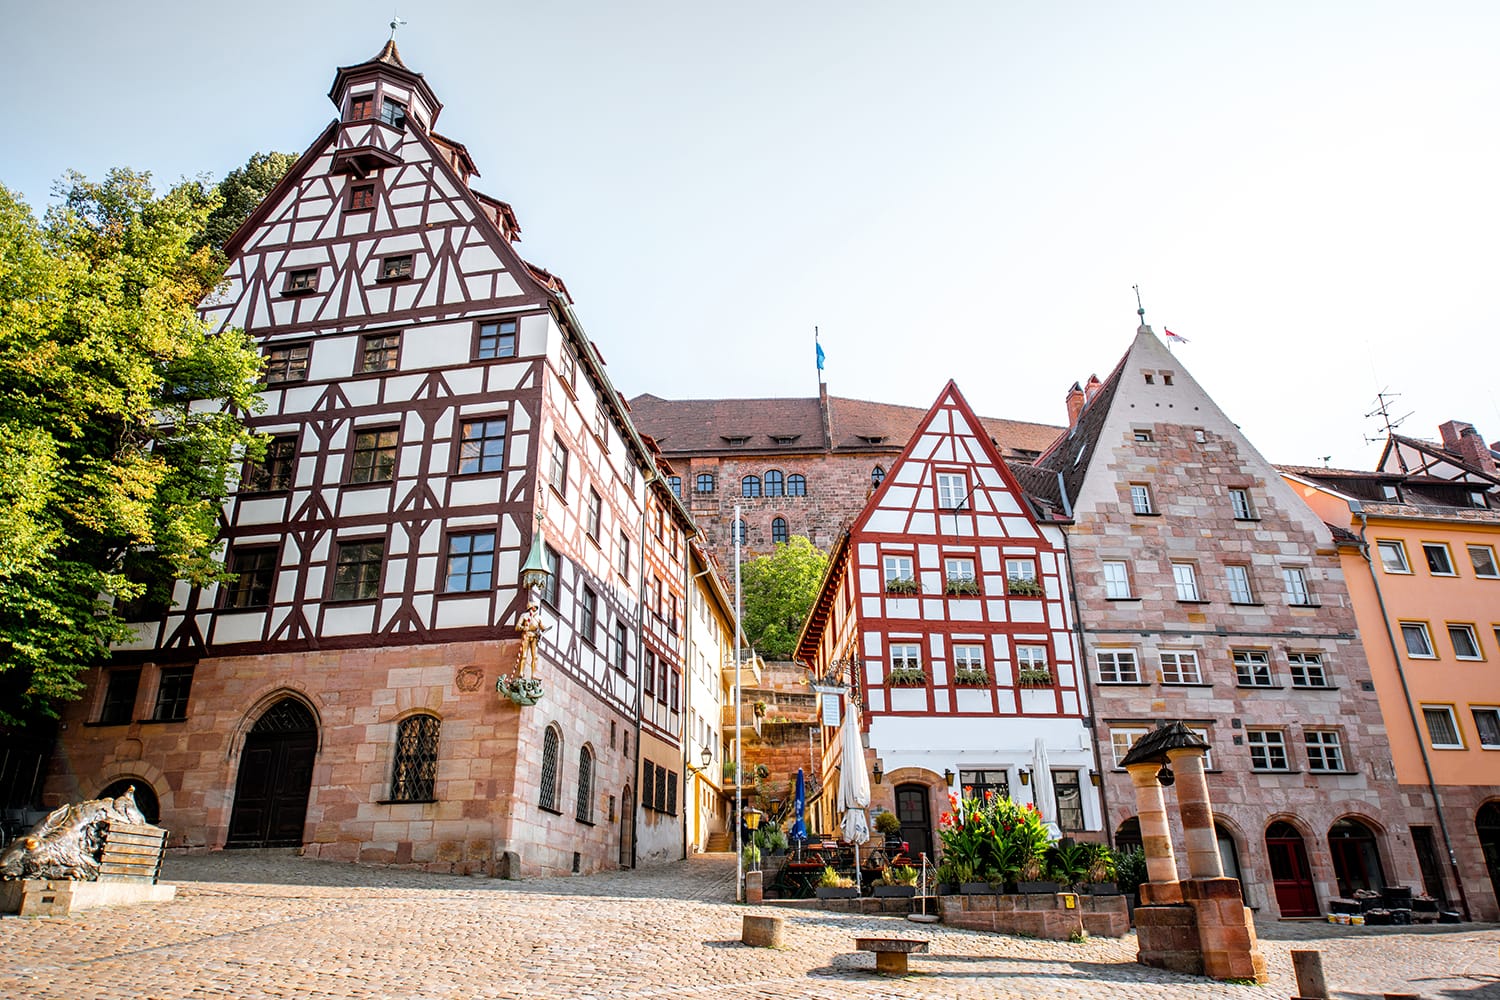 Όμορφα ημιξύλινα σπίτια στην παλιά πόλη της Νυρεμβέργης, Γερμανία